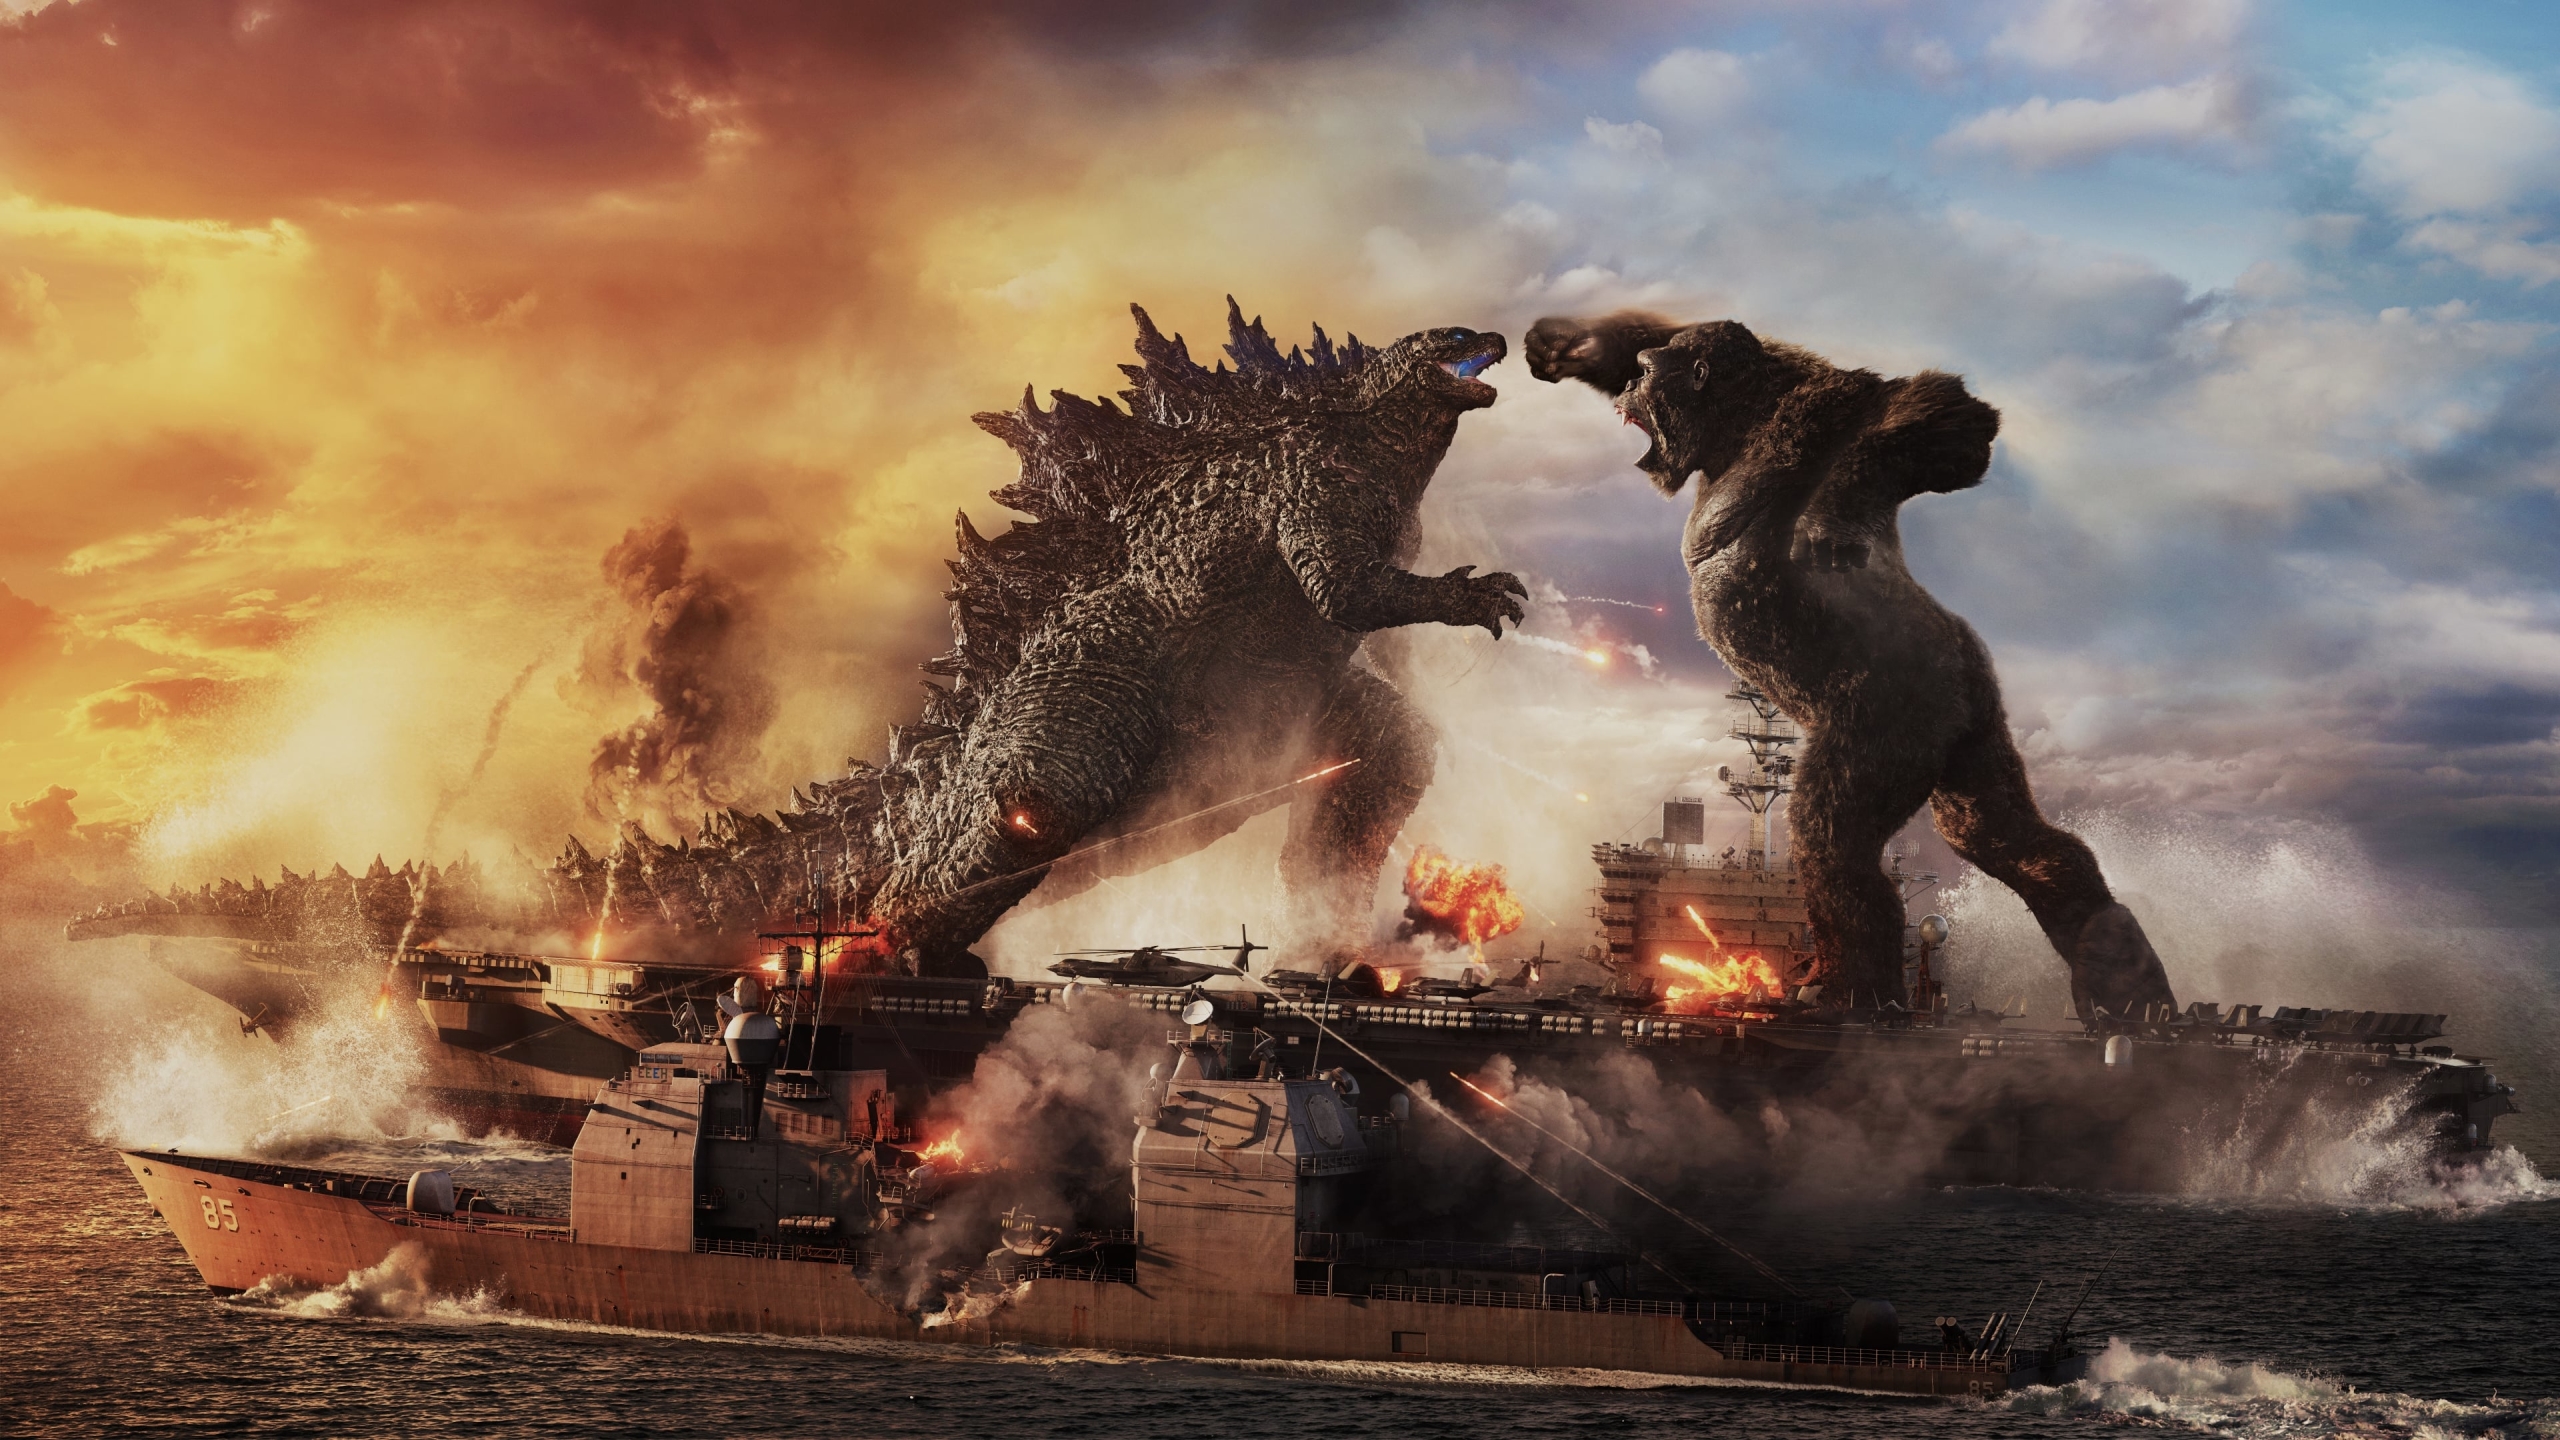 2560x1440 Godzilla vs King Kong 4K Fight 1440P Resolution Wallpaper, HD